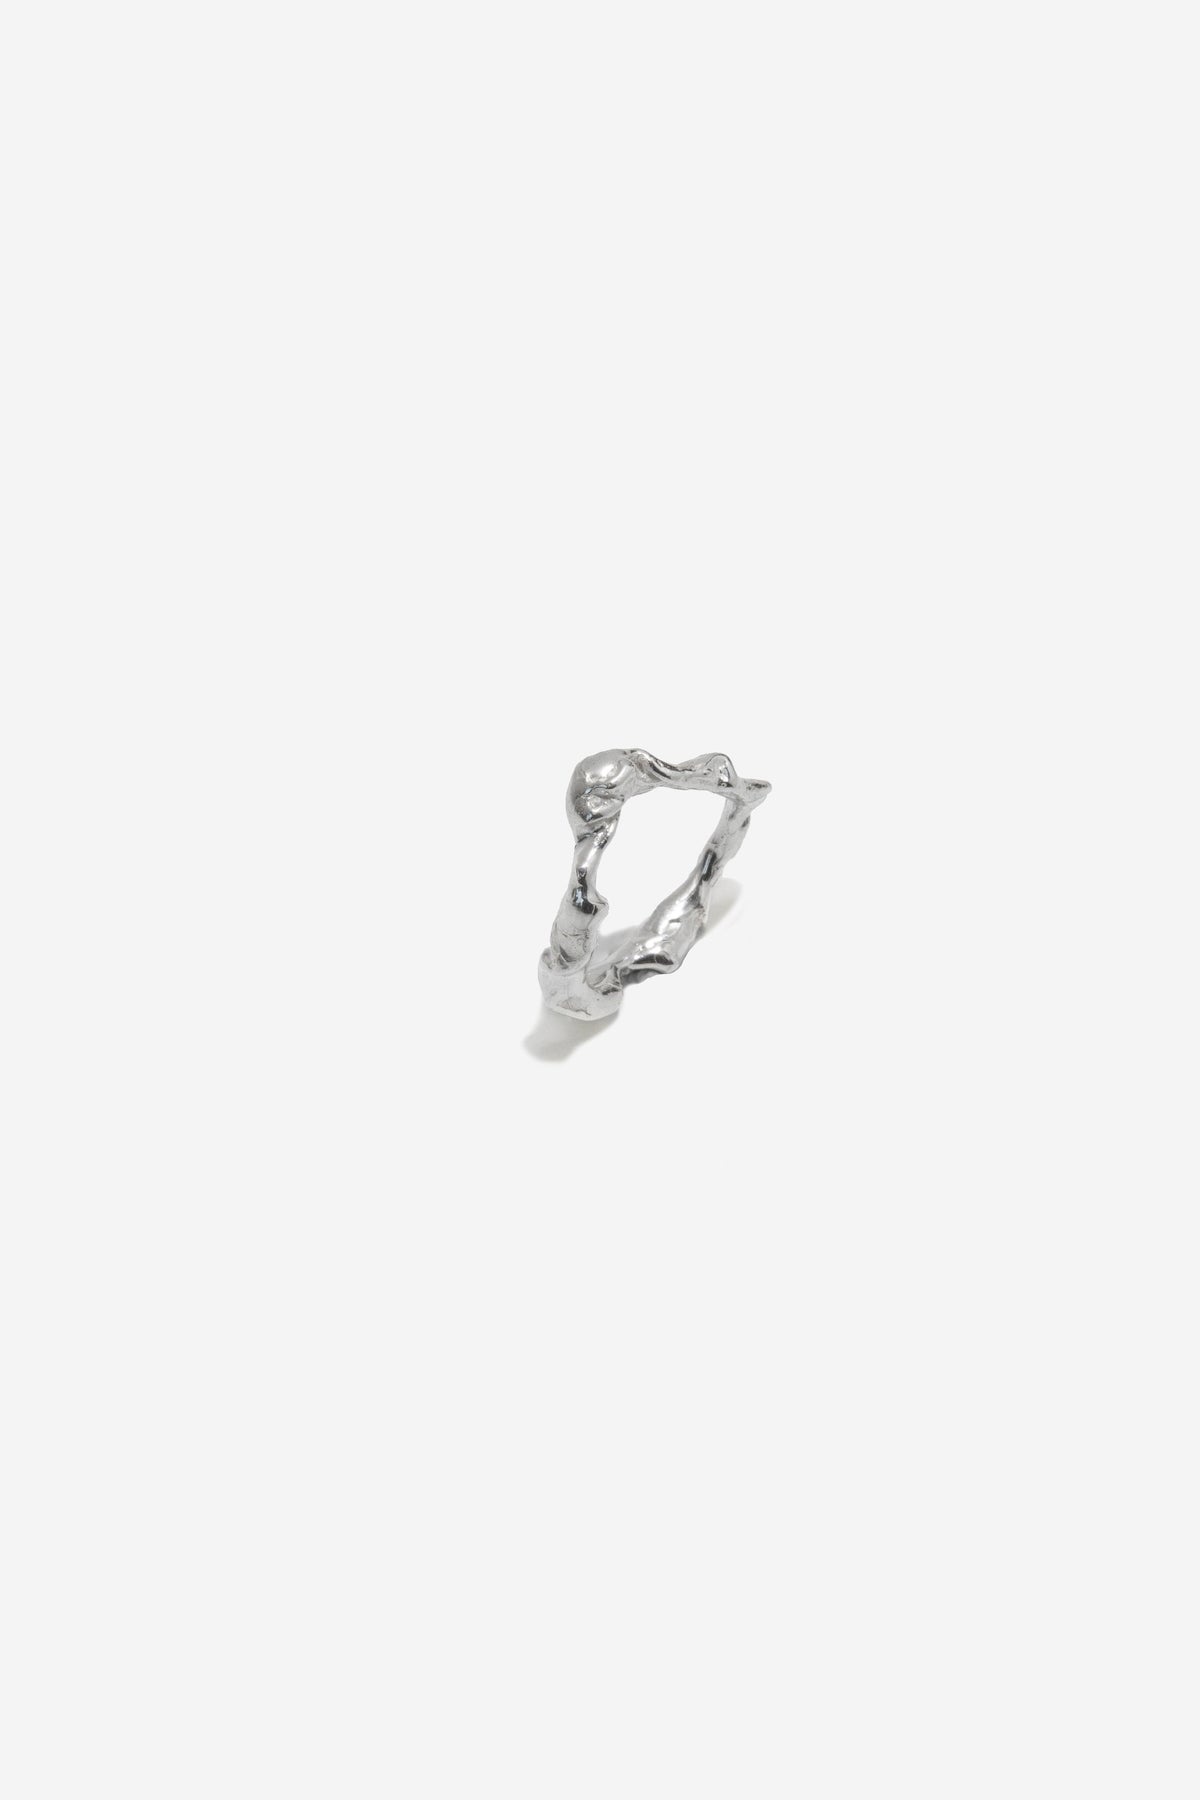 Tilda Fiora Ring // Silver